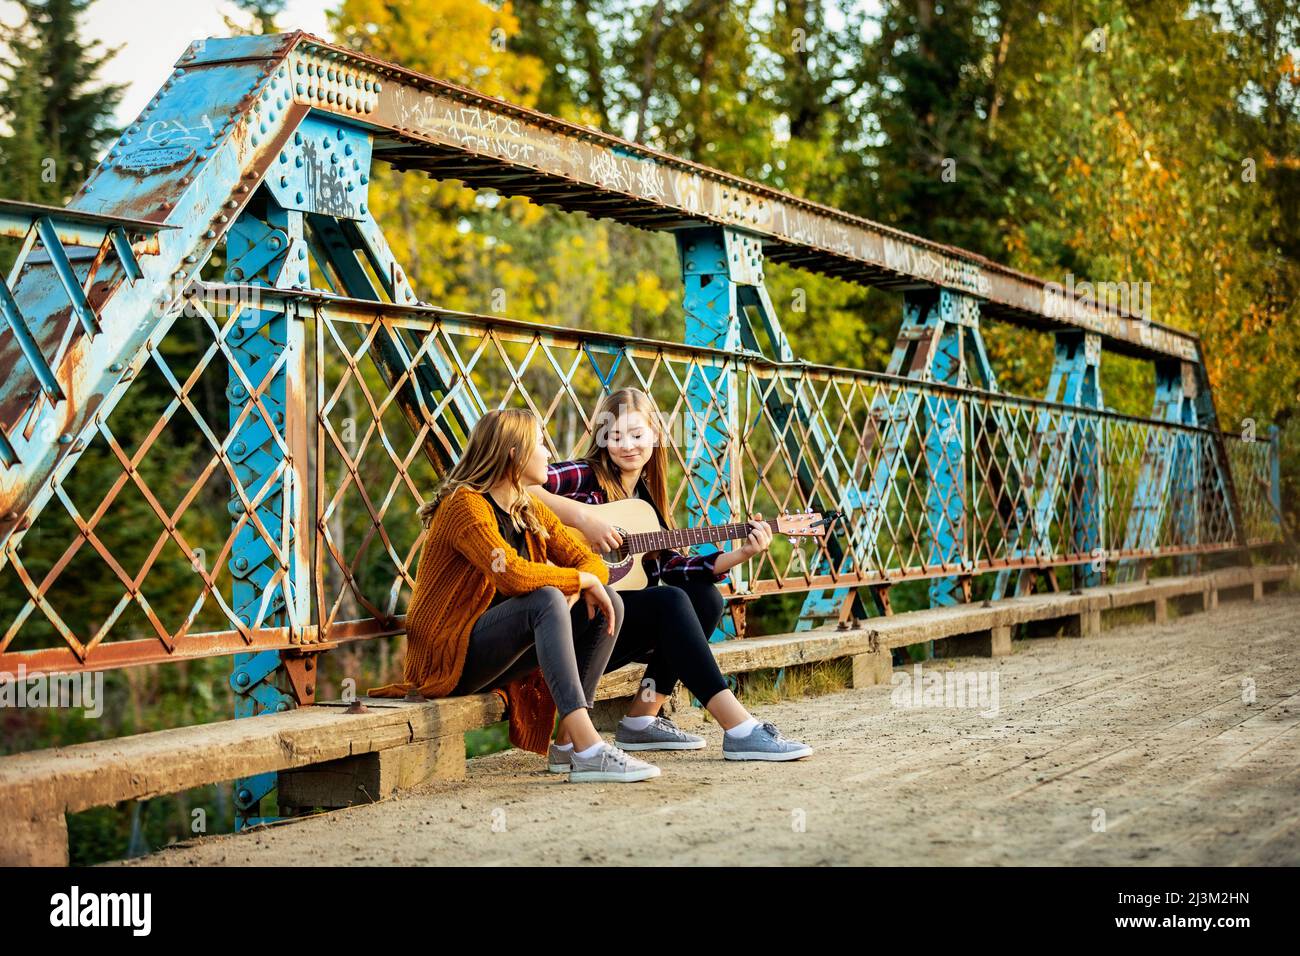 Zwei Schwestern sitzen auf einer Parkbrücke, eine mit akustischer Gitarre, und genießen gemeinsam Musik; Edmonton, Alberta, Kanada Stockfoto